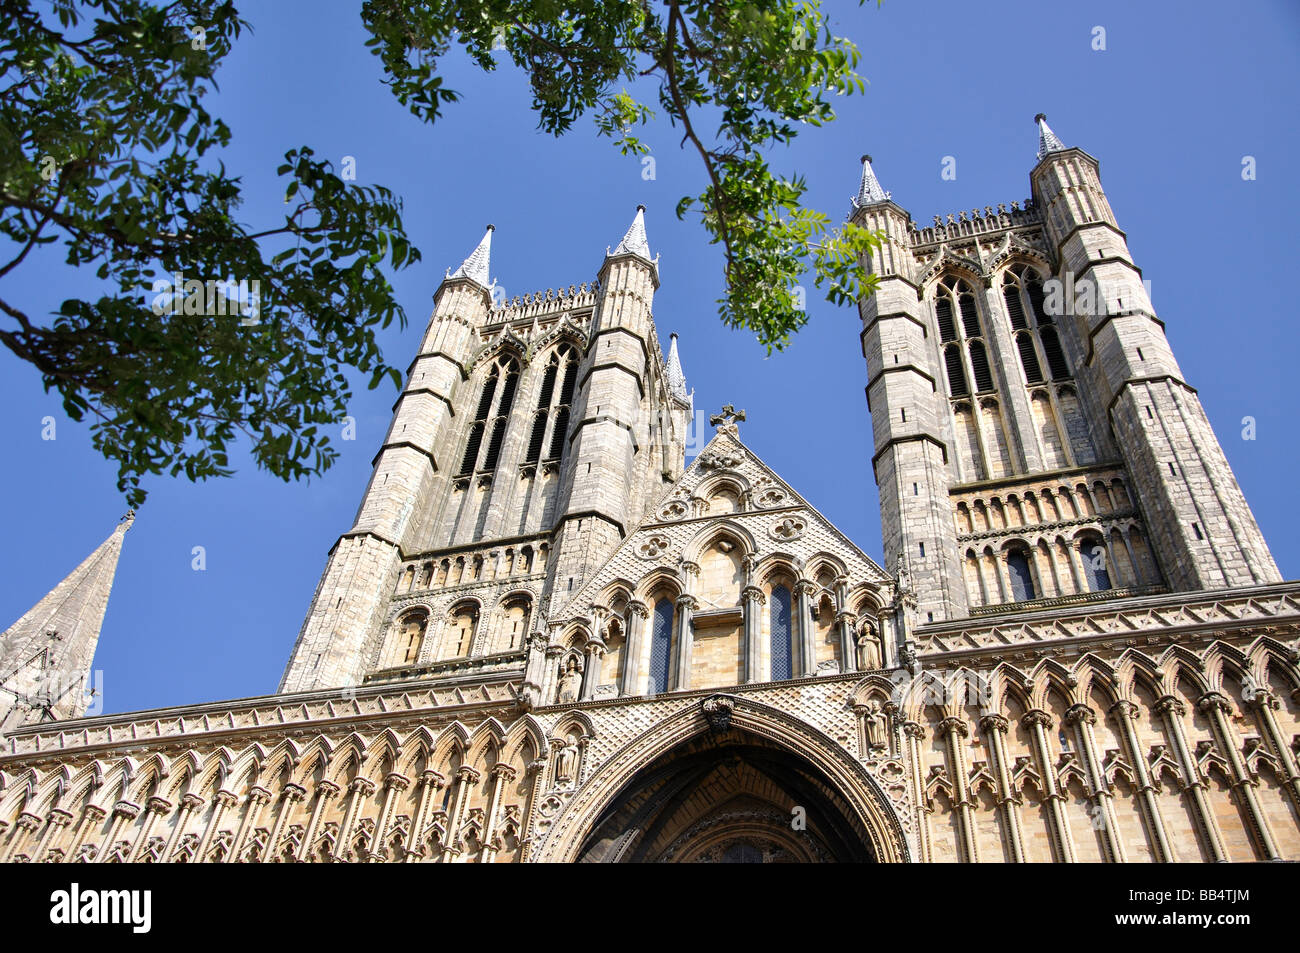 L'ouest de Norman, avant la cathédrale de Lincoln, Lincoln, Lincolnshire, Angleterre, Royaume-Uni Banque D'Images